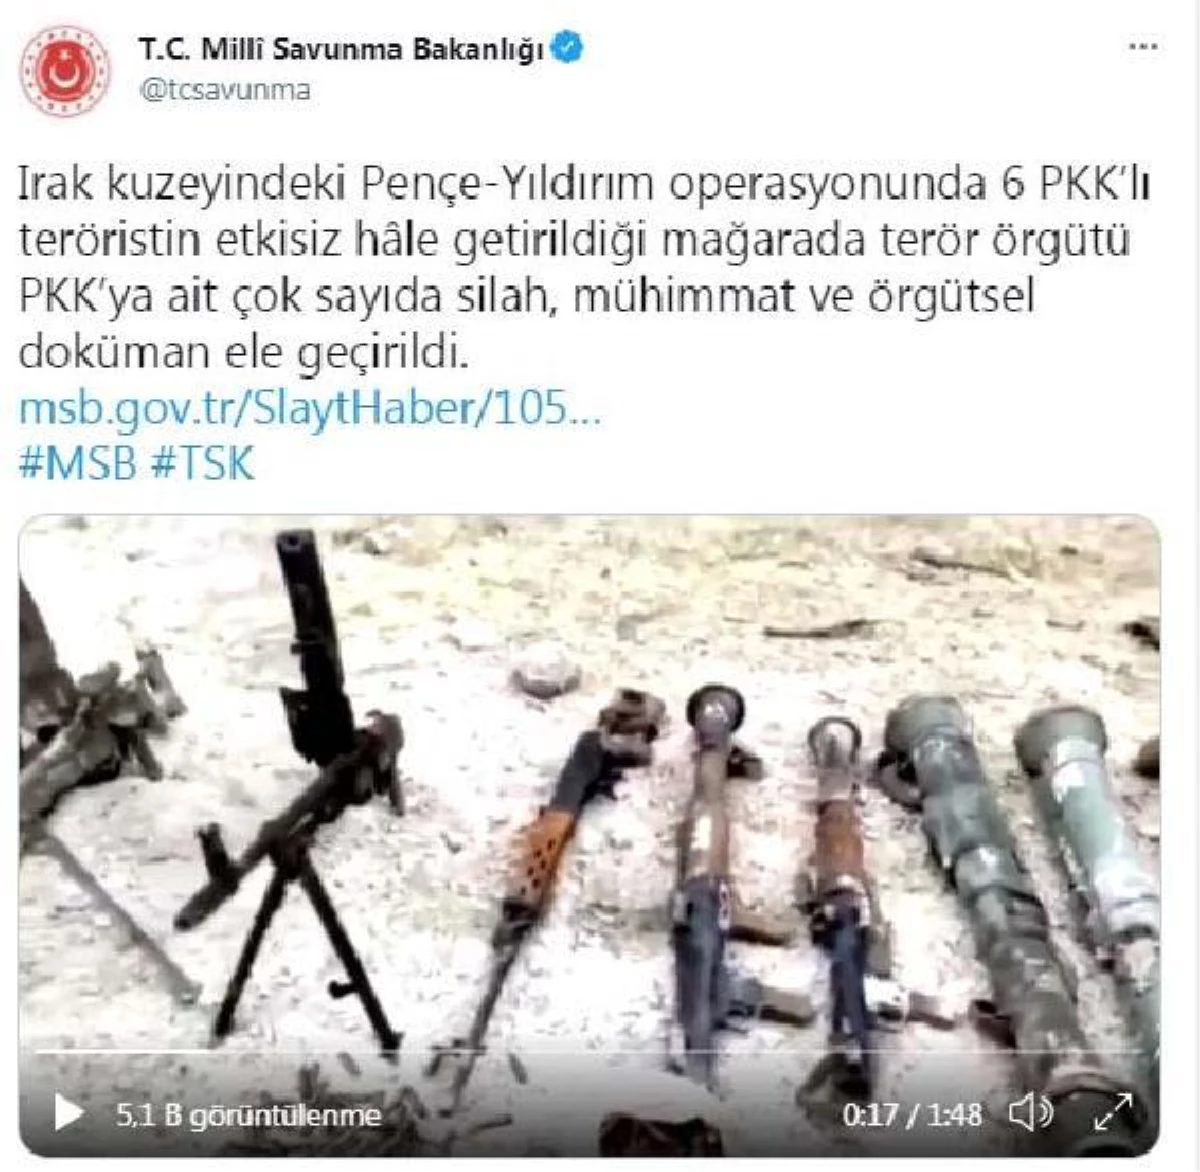 ANKARA Pençe-Yıldırım operasyonunda 6 PKK\'lı teröristin etkisiz hale getirildiği mağarada PKK\'ya ait çok sayıda silah, mühimmat ele geçirildi